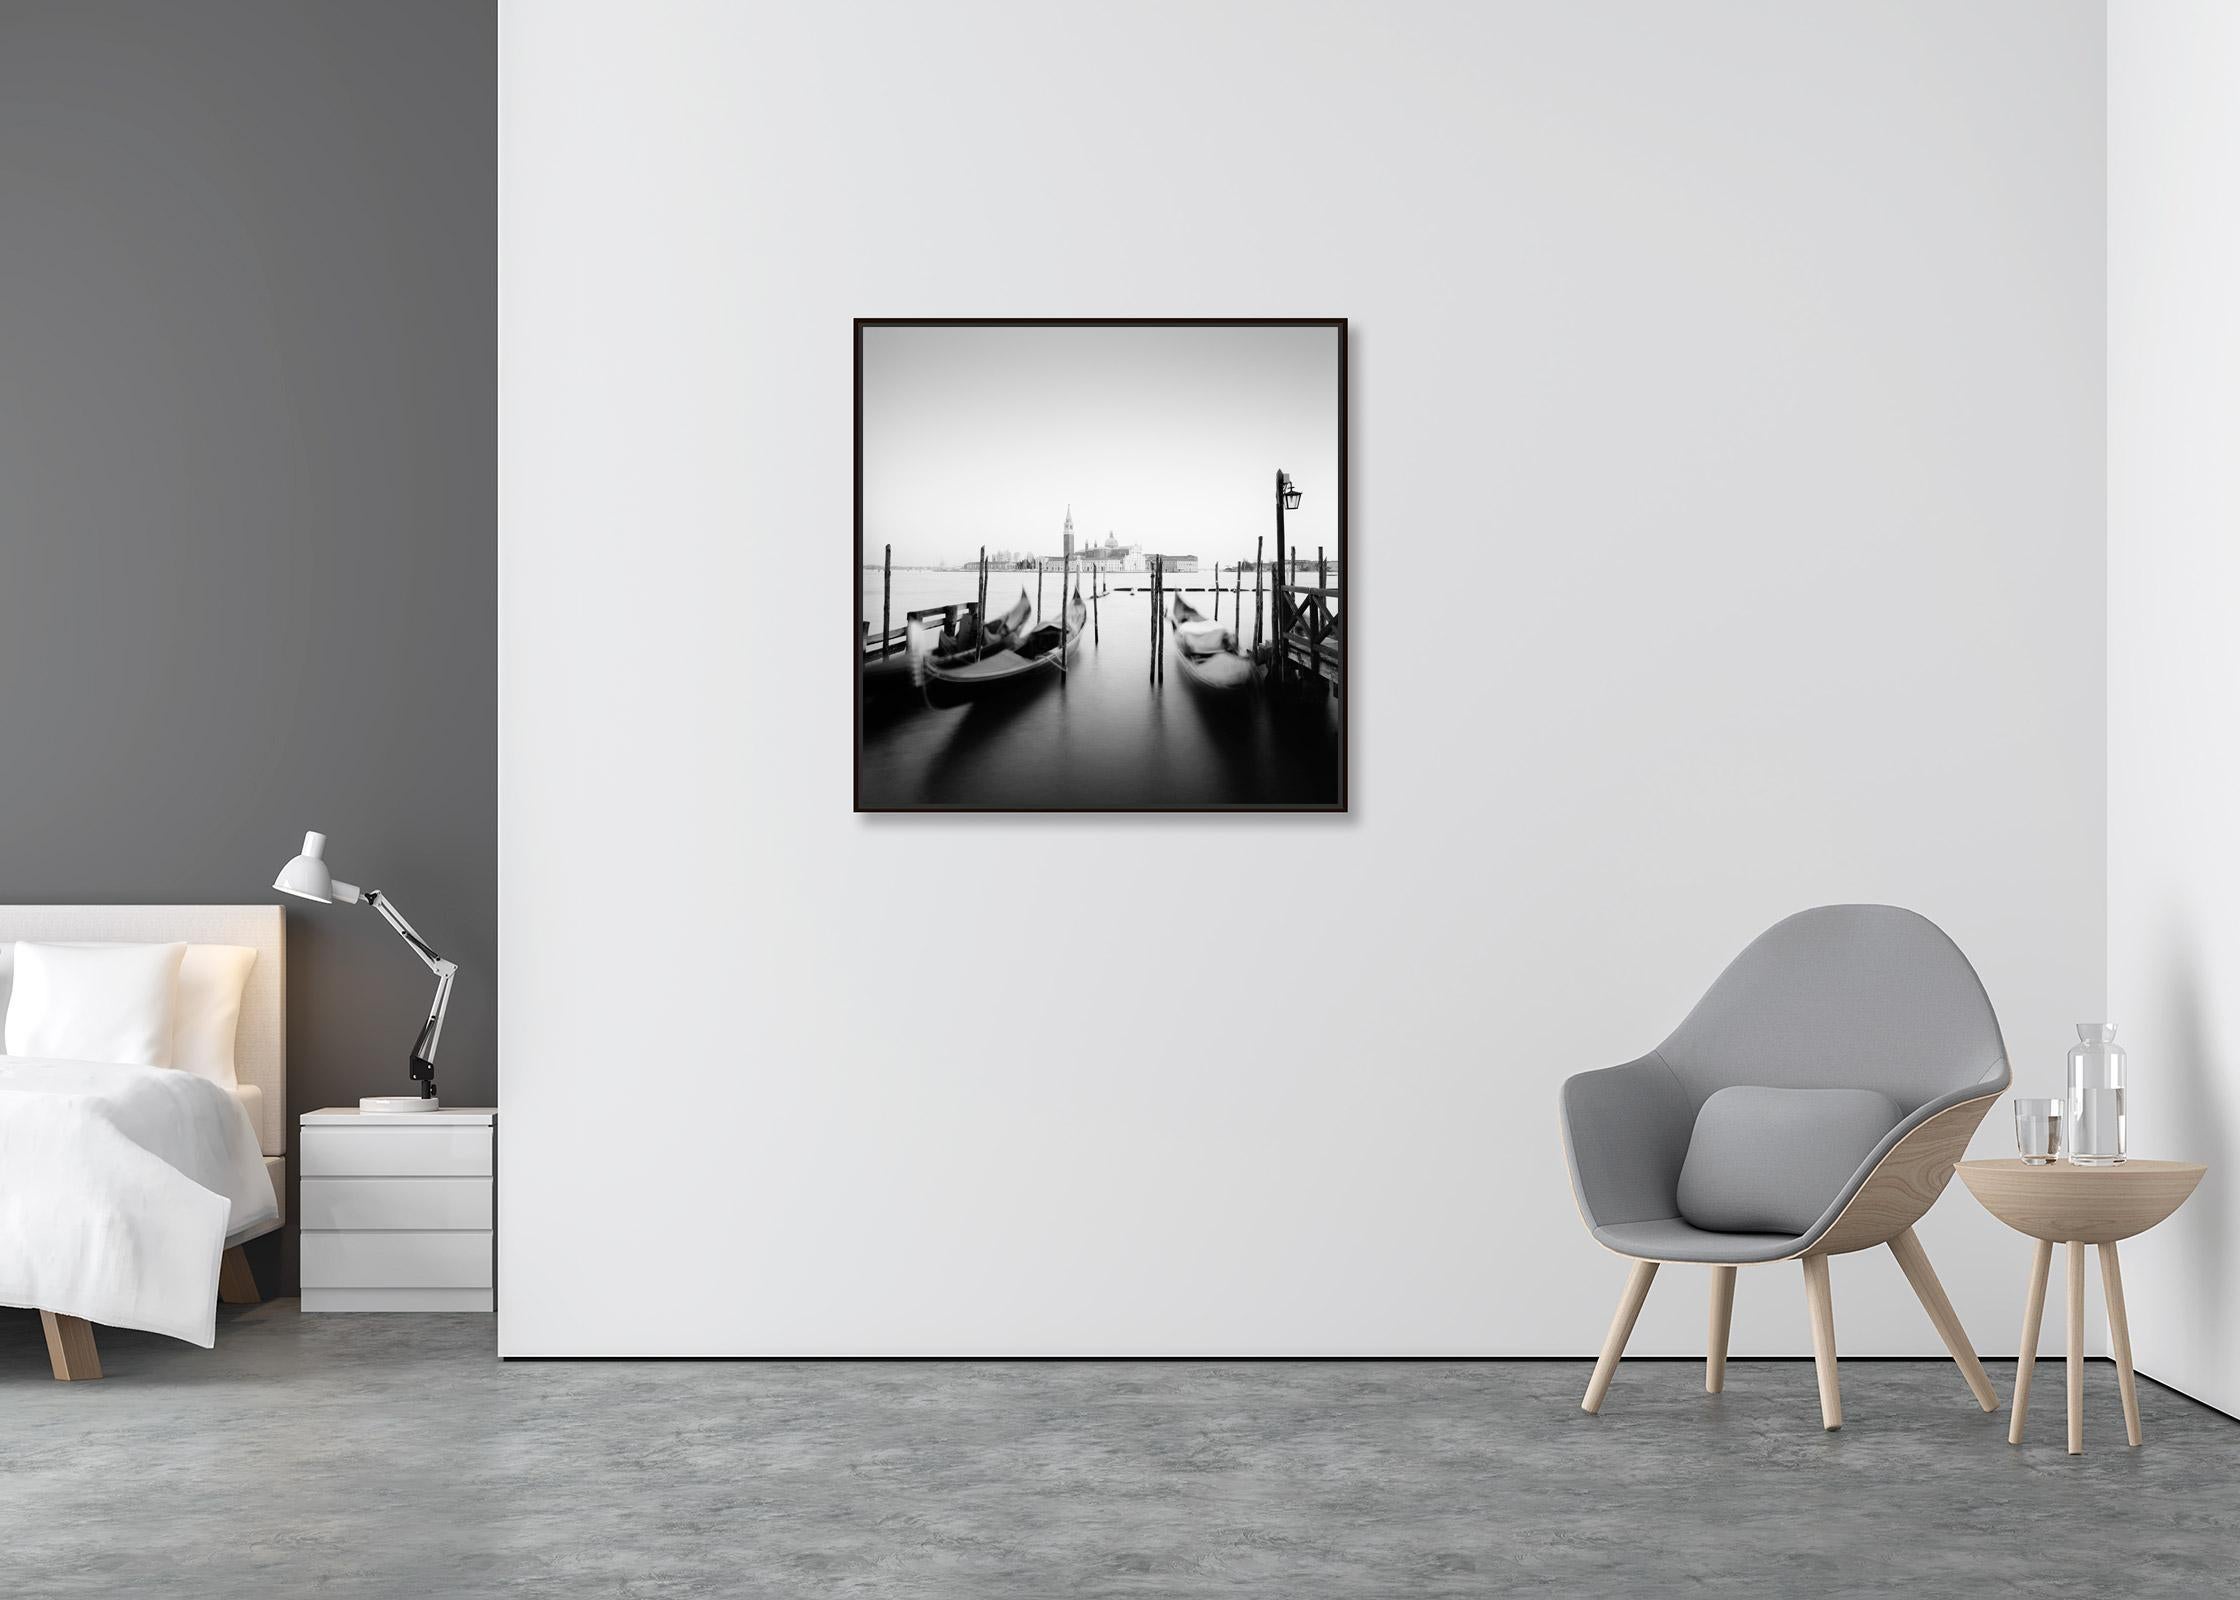 Santa Maria della Salute, Gondola, Venice, black and white cityscape photography - Contemporary Photograph by Gerald Berghammer